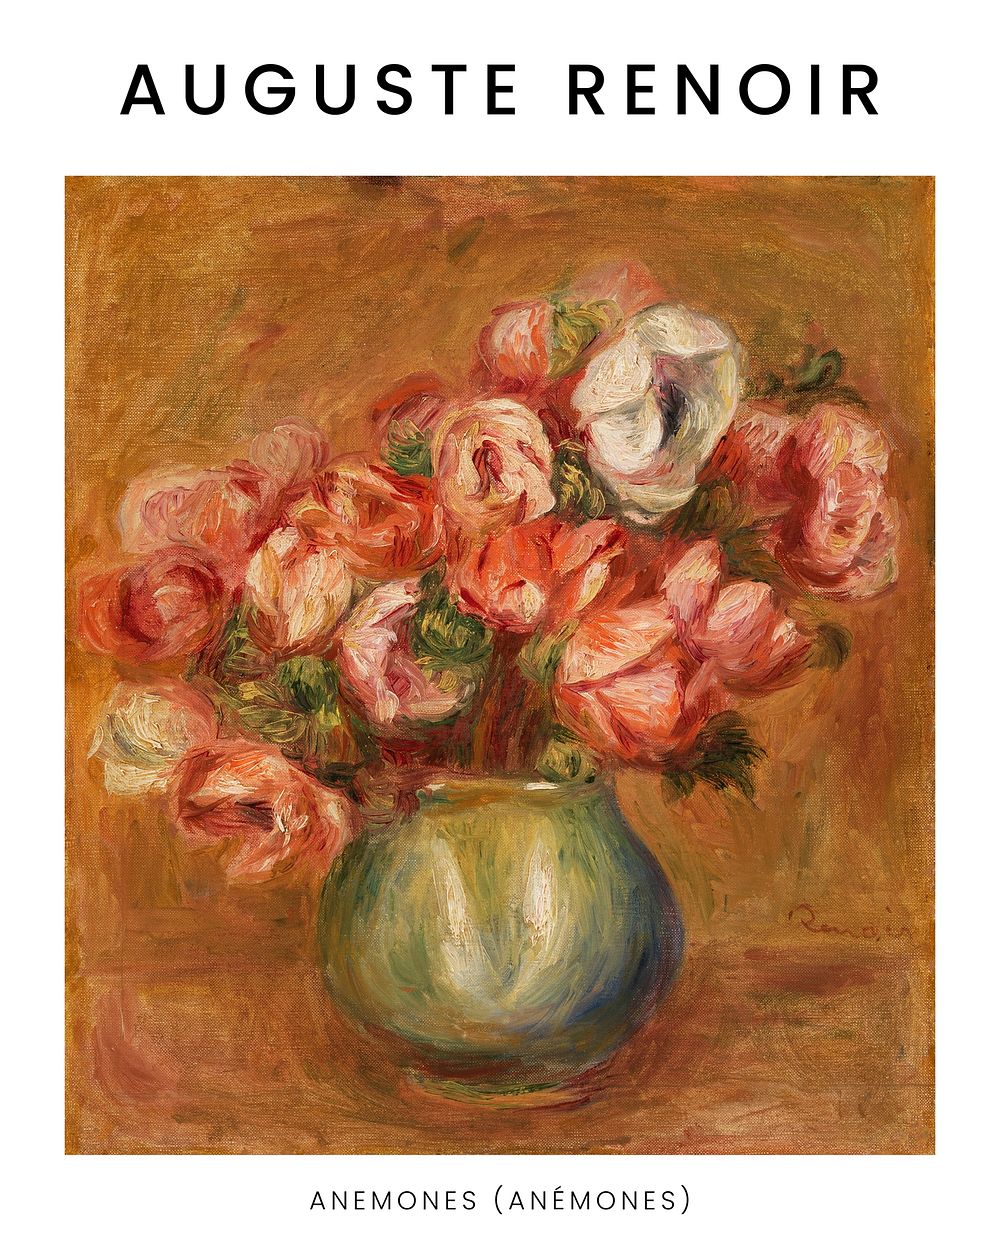 Auguste Renoir Anemones art print, vintage flower painting wall art